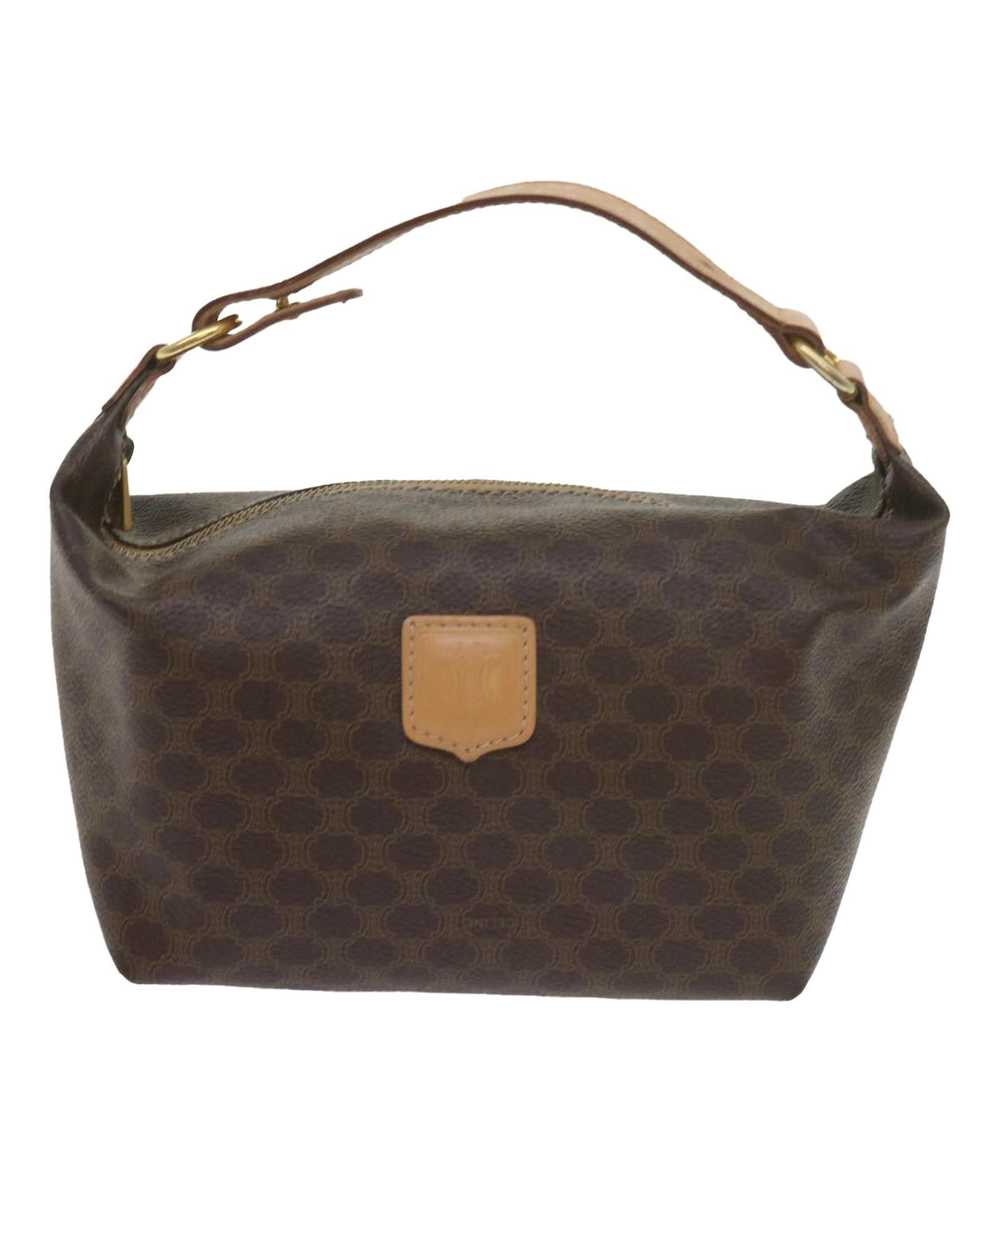 Celine Elegant Brown Canvas Bag by Luxury Designer - image 2